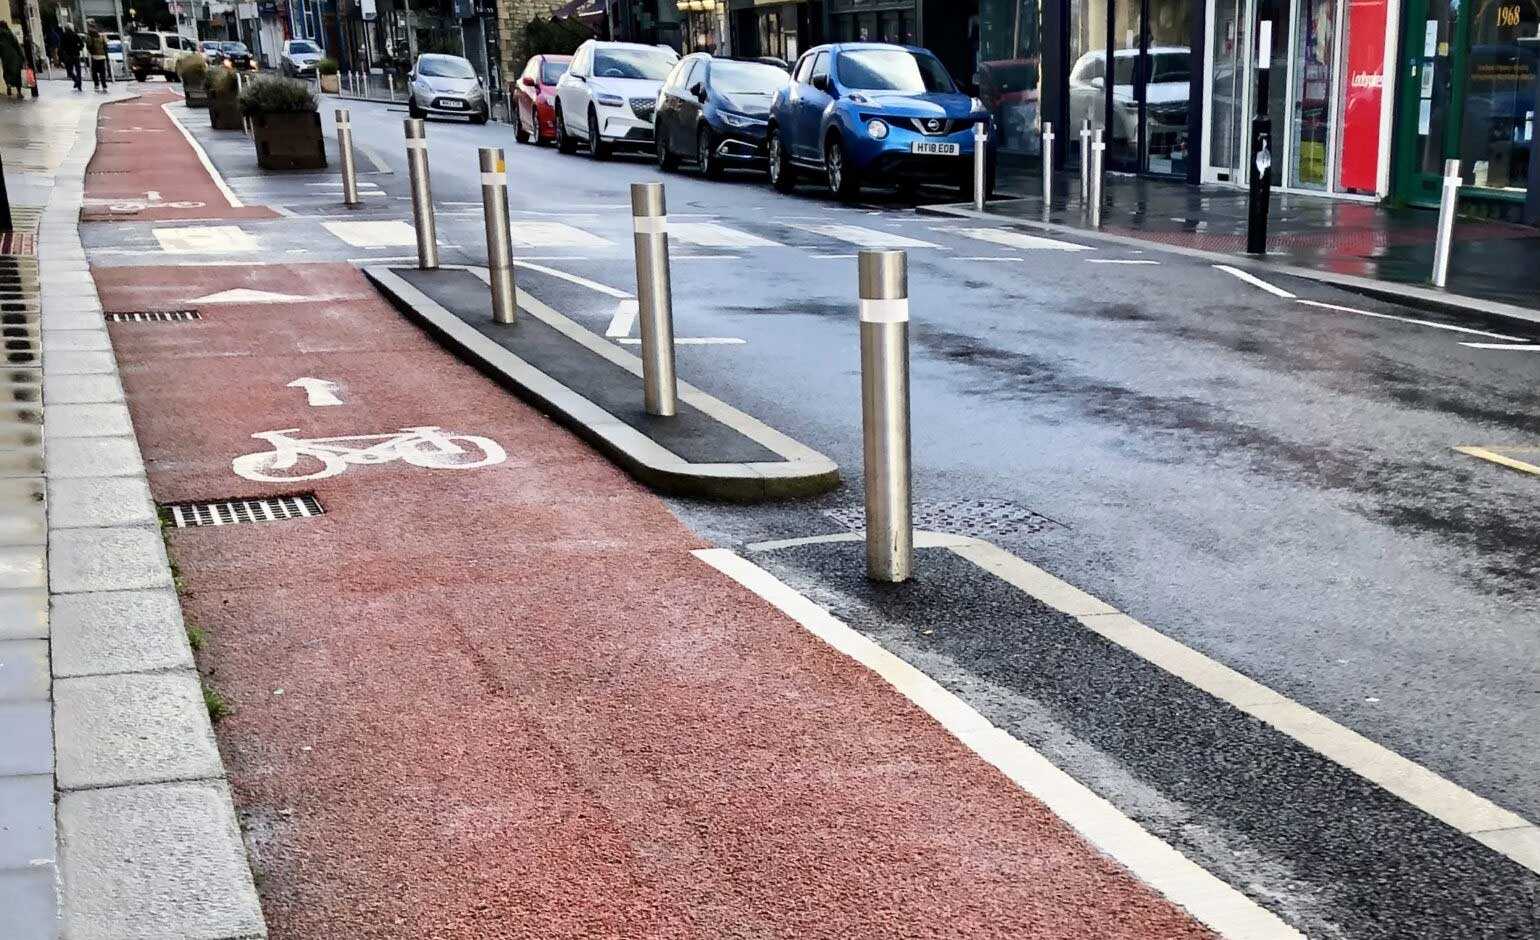 New line markings aim to reduce falls on Keynsham High Street